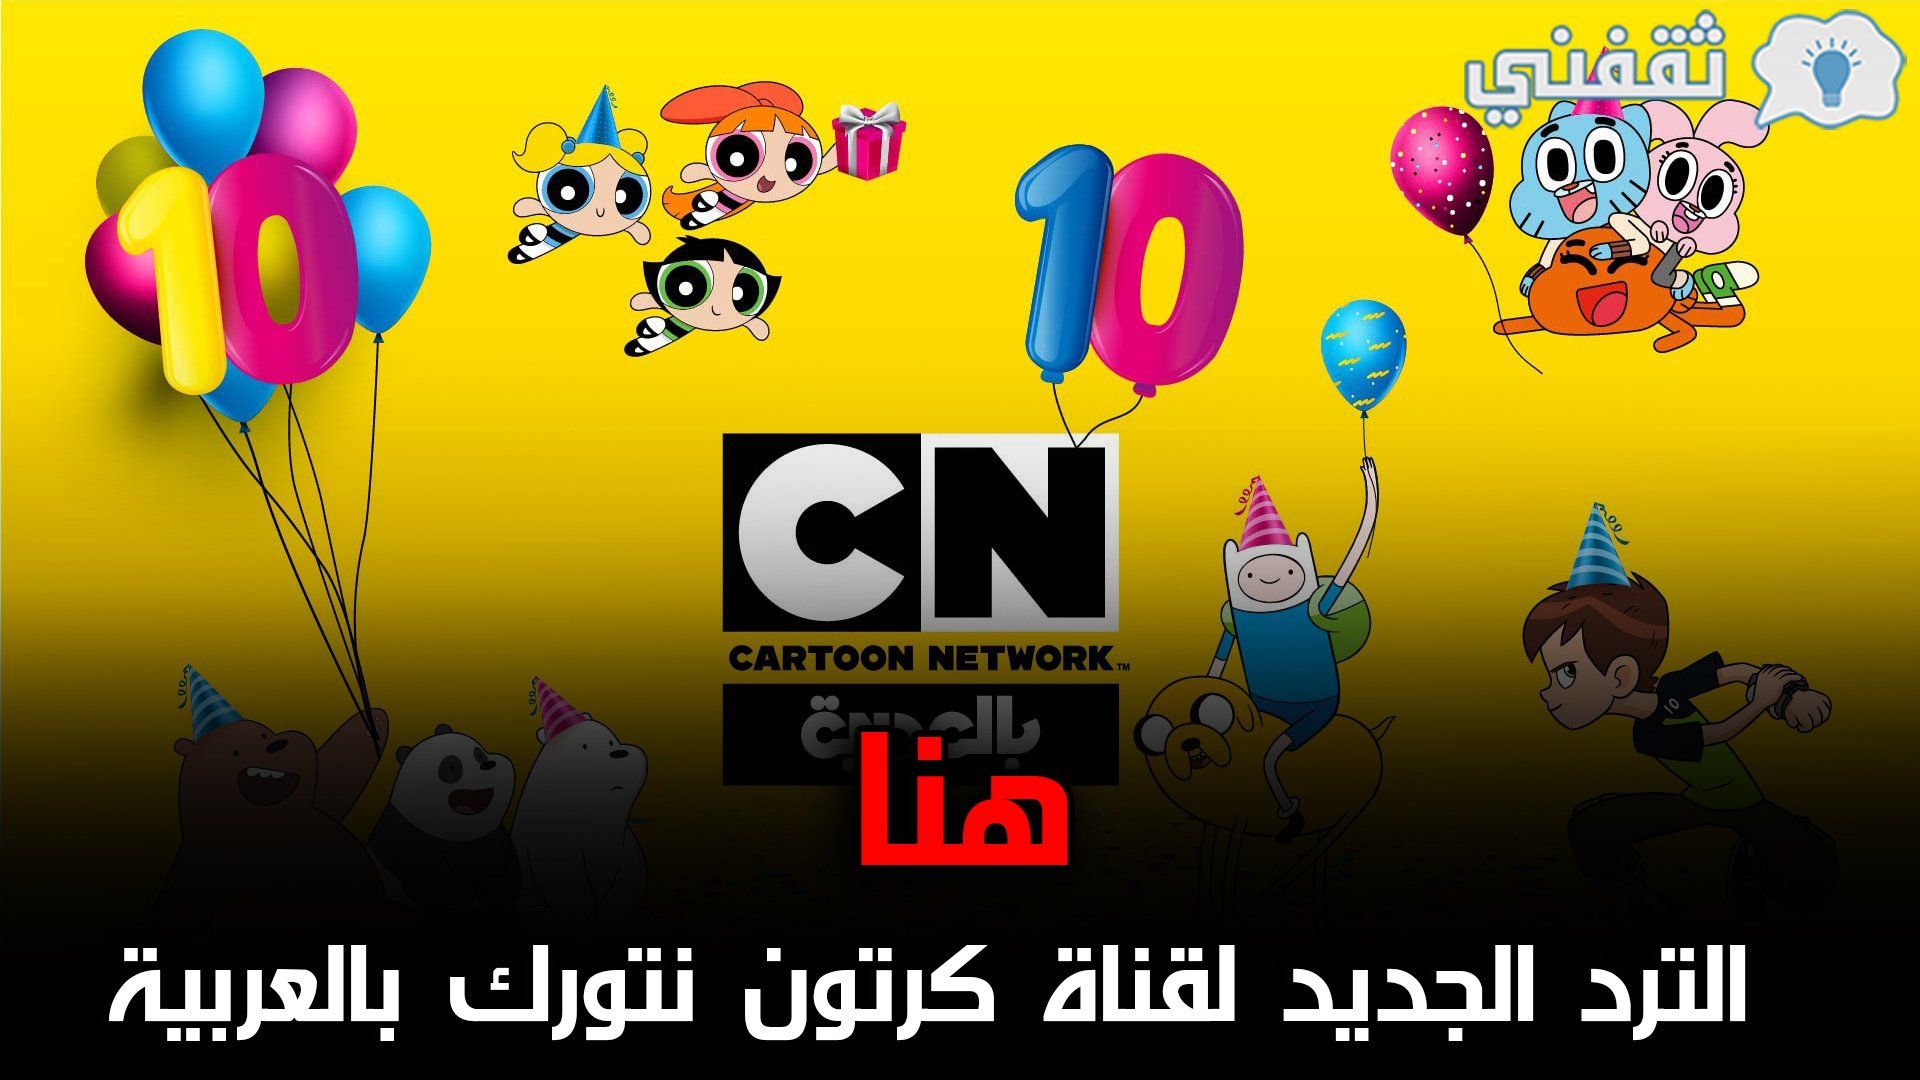 تردد قناة كرتون نتورك العربية CN Arabia الجديد 2021 على النايل سات